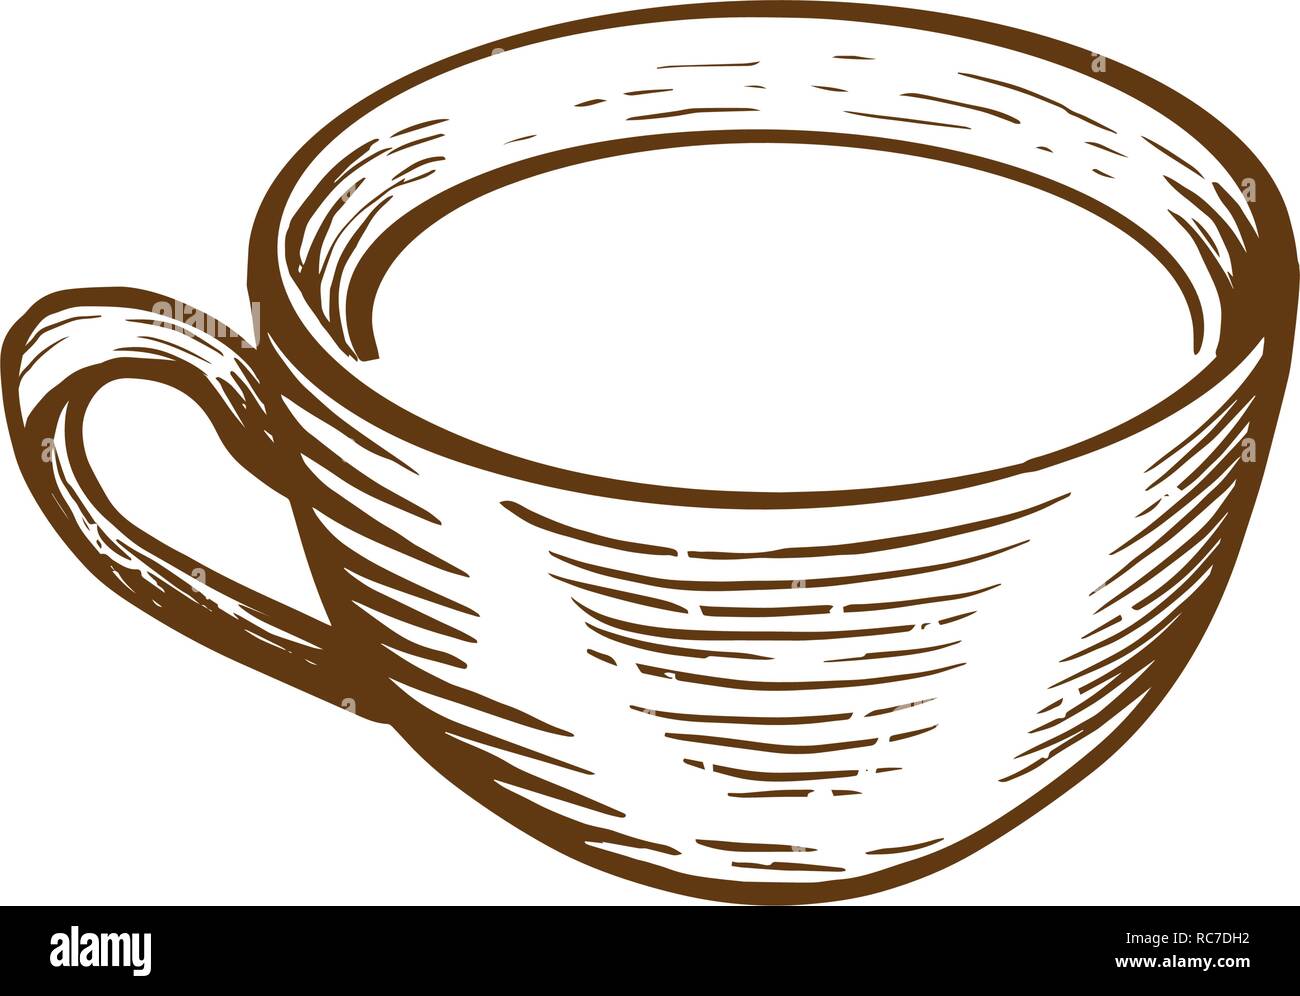 Handskizze Tasse Tee oder Kaffee mit Herz gezeichnet. Graviert stil Vector Illustration. Stock Vektor